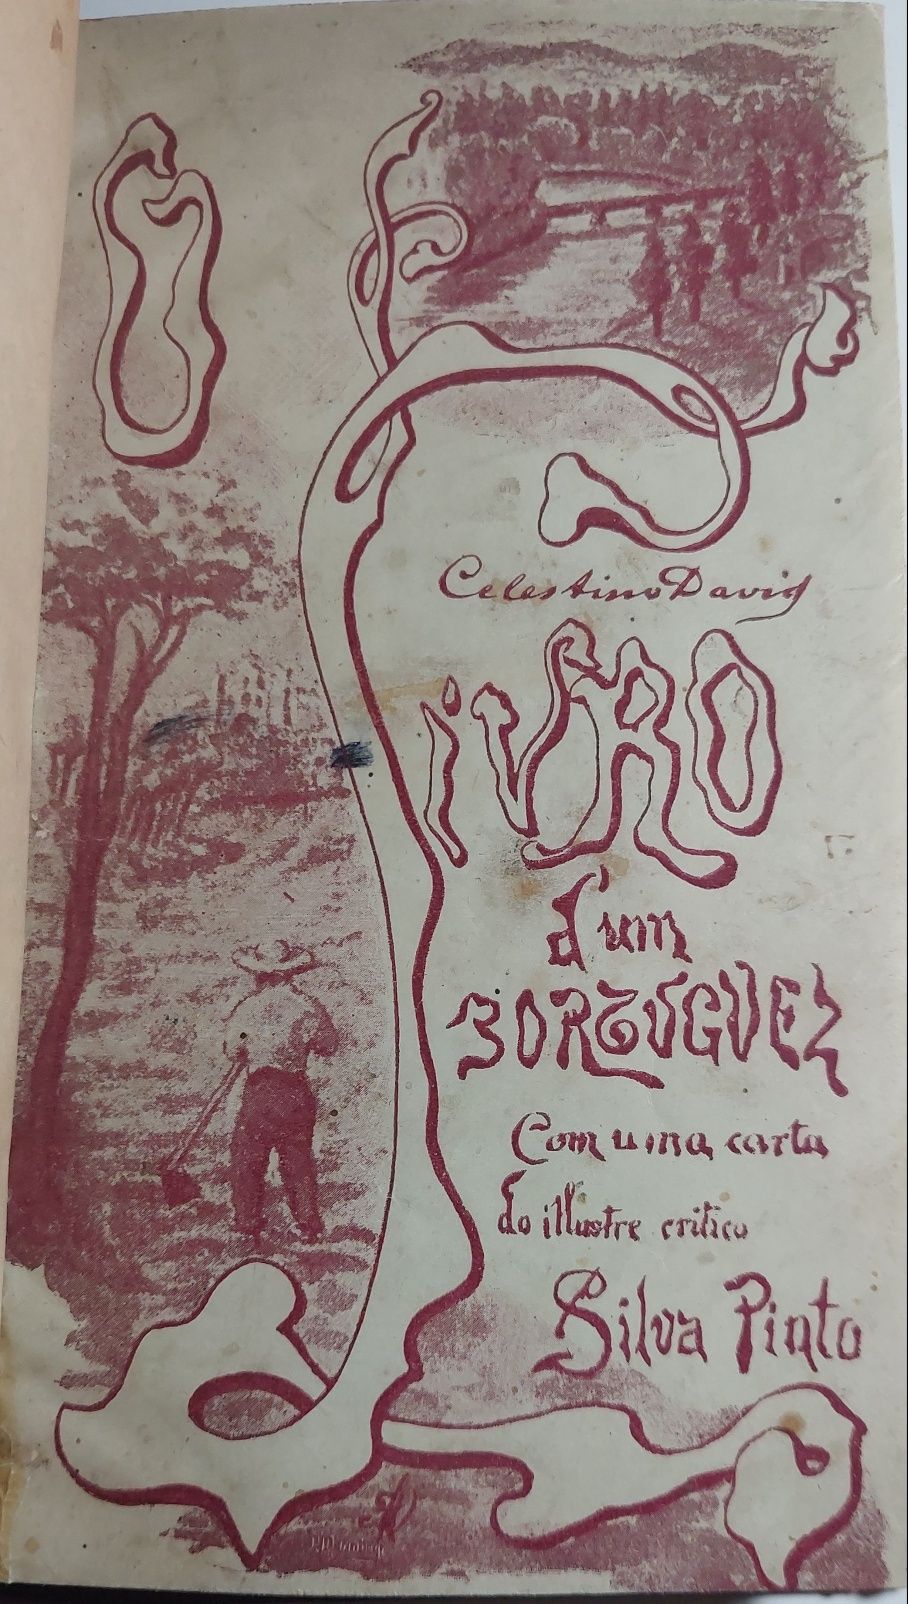 O Livro d'um Portuguez - Celestino David (1900)